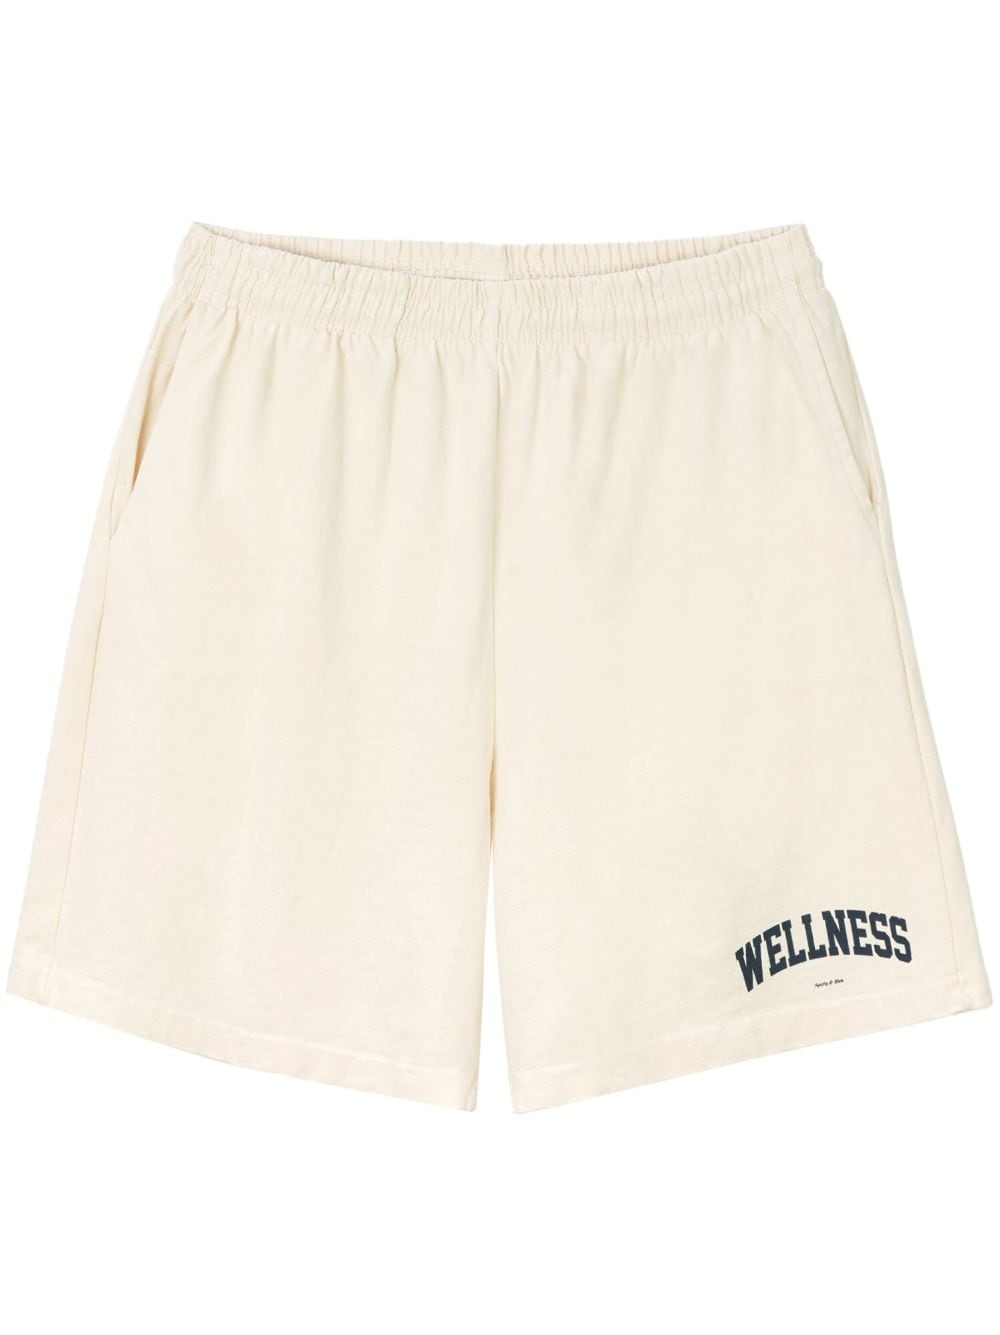 Sporty & Rich Wellness Ivy Shorts - Weiß von Sporty & Rich